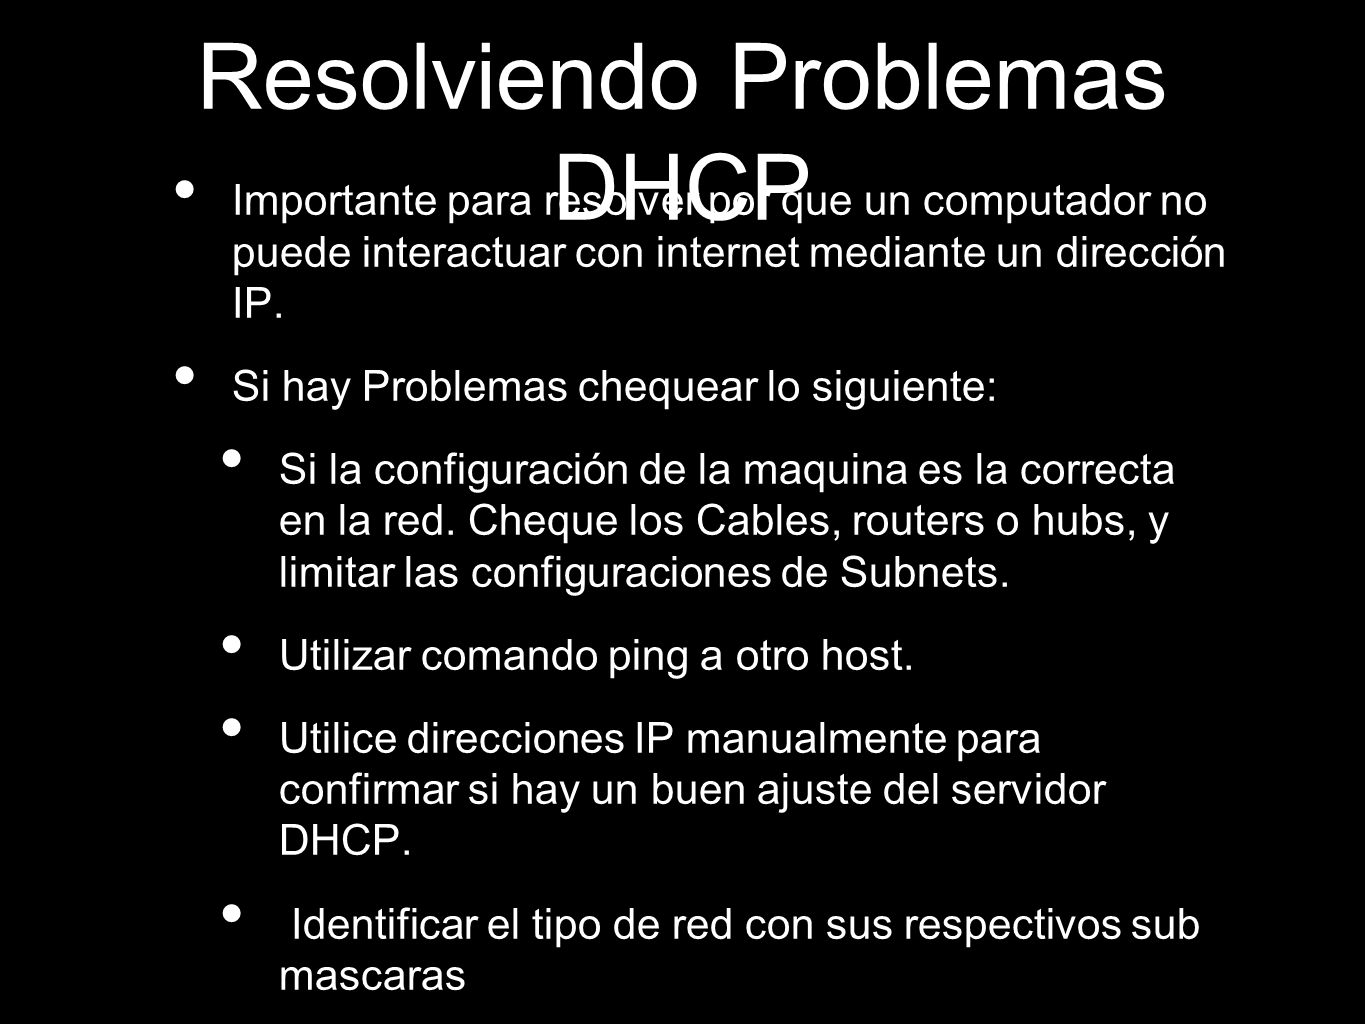 Resolviendo Problemas DHCP